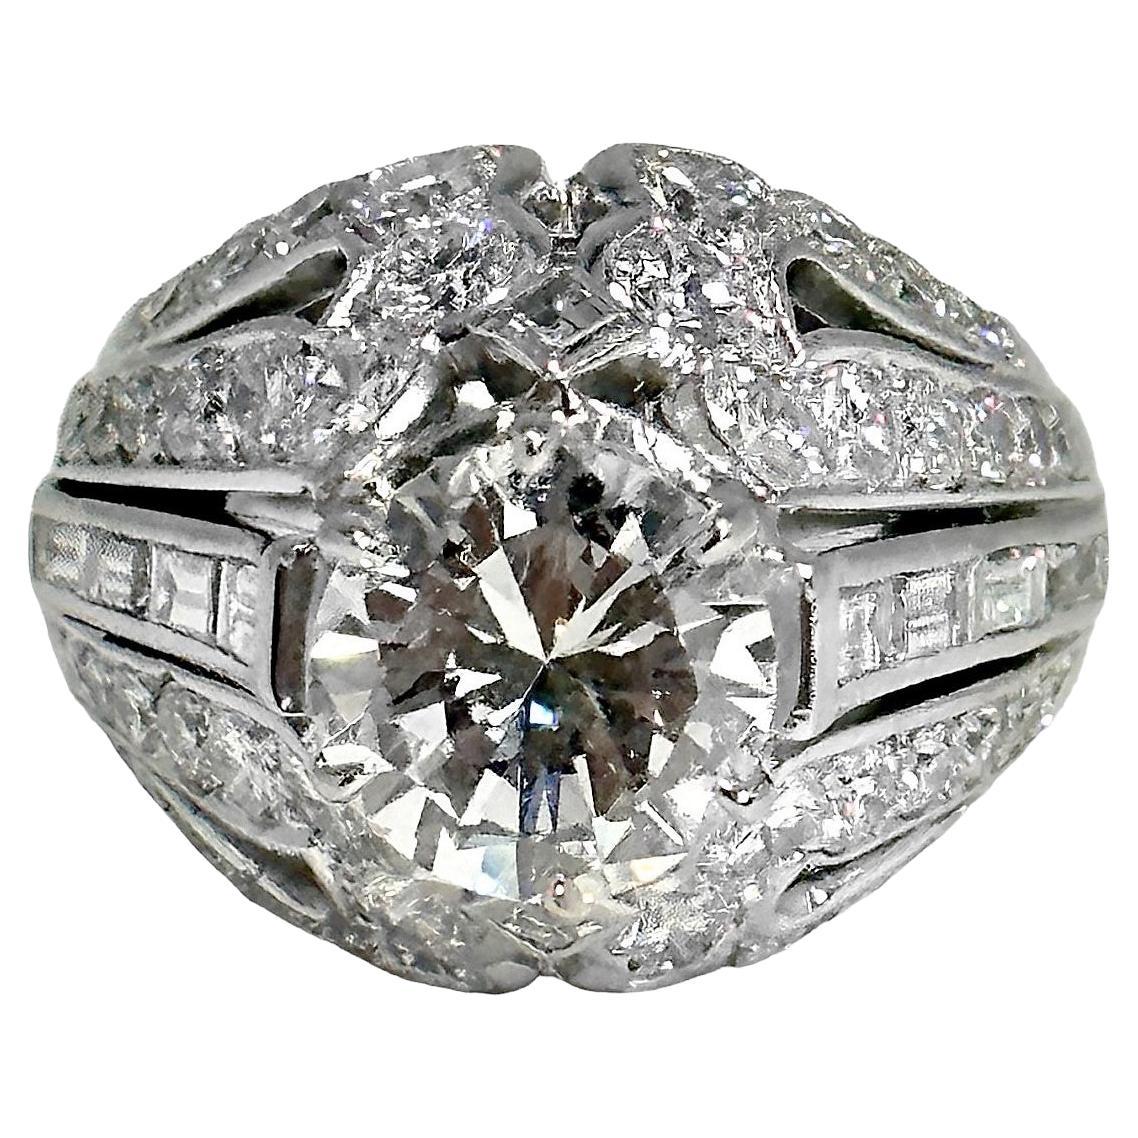 Elegant Mid-20th Century French Platinum Diamond Solitaire Ring 1.98ct Center 